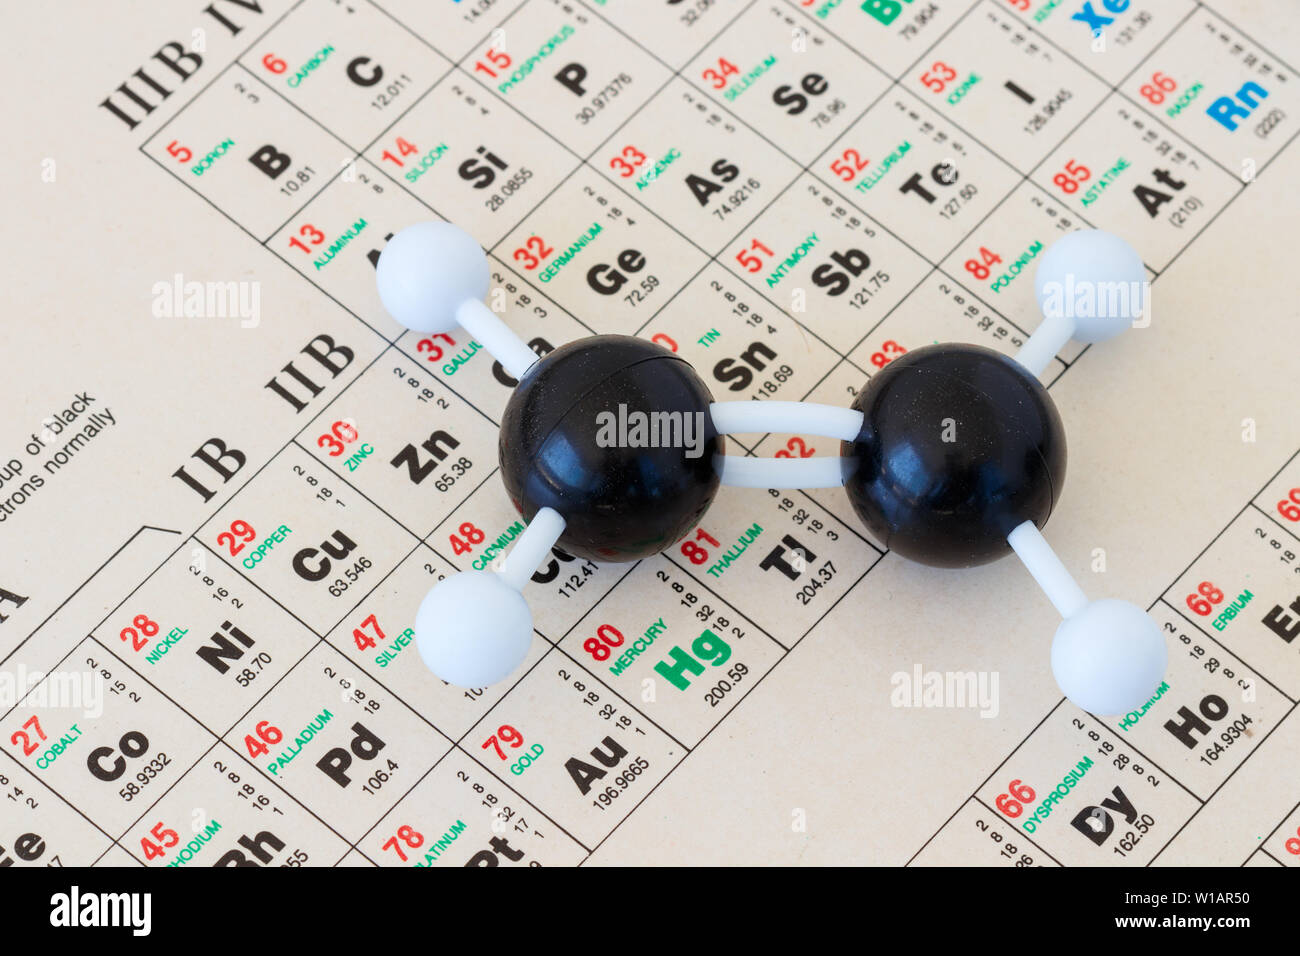 Periodensystem der Elemente mit einem Kunststoff Kugel-und-stick Modell einer Ethylen oder ethen Moleküls (C2H6). Kleine Tiefenschärfe. Stockfoto